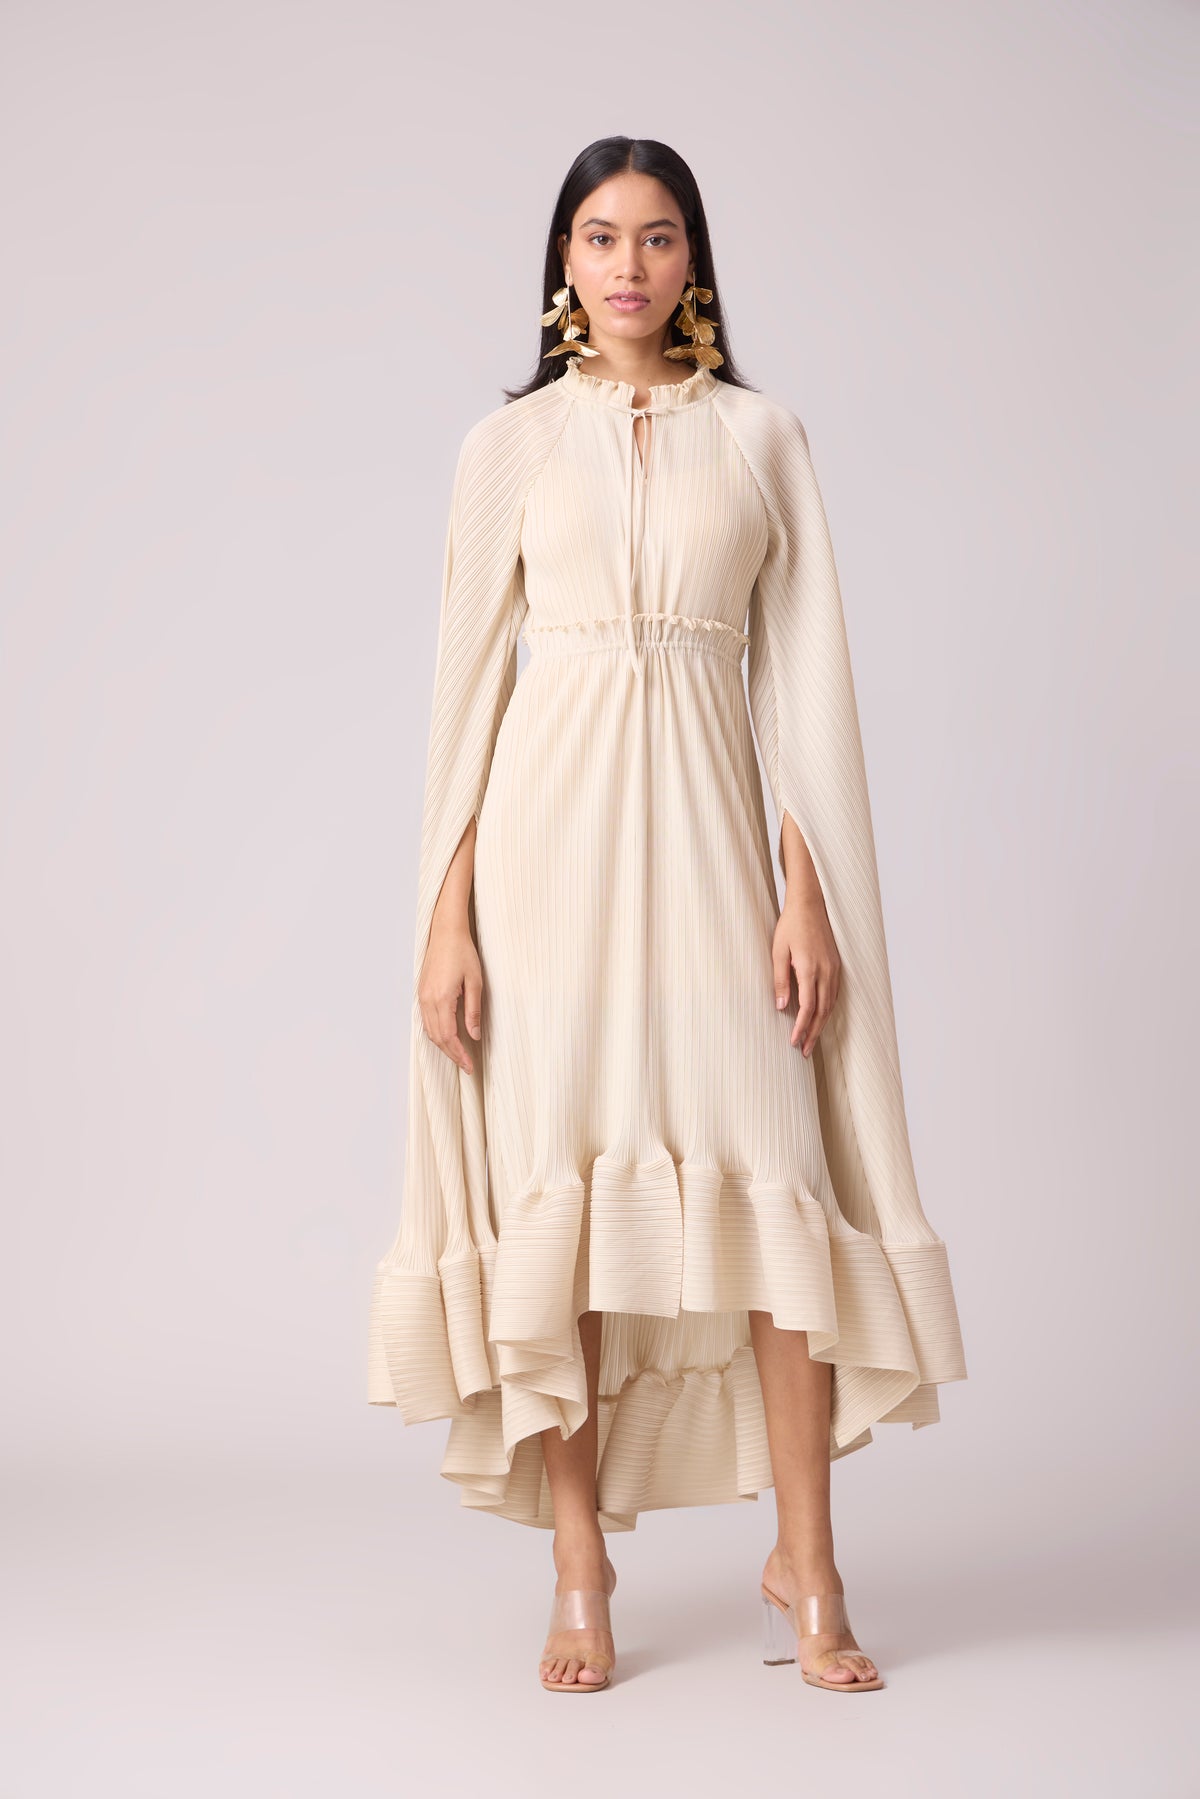 Tasmina Dress - Off White